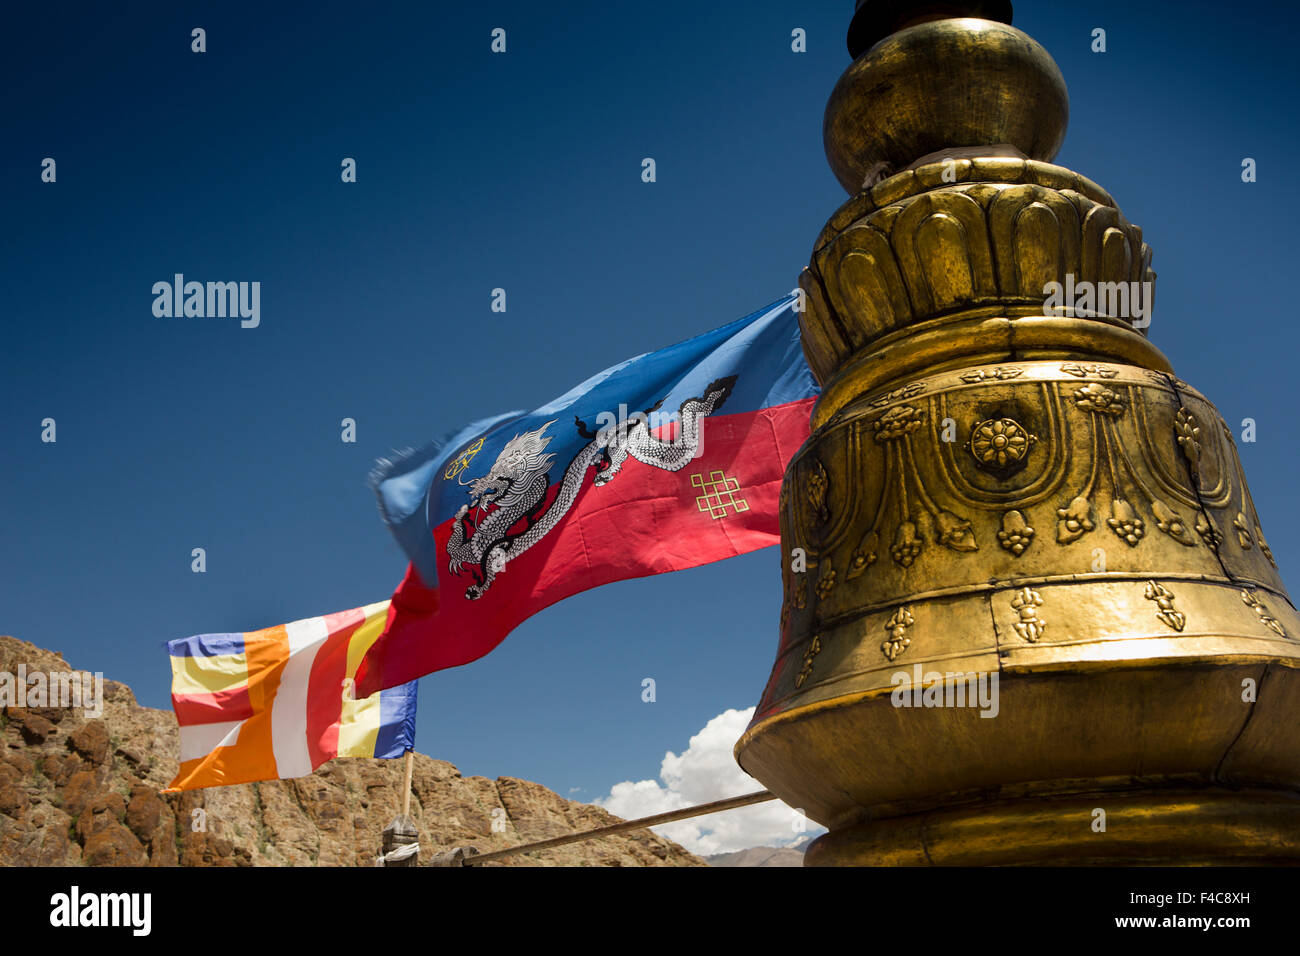 L'Inde, le Jammu-et-Cachemire, Ladakh, Hemis Gompa, monastère bouddhiste tibétain de l'Inde et de la tradition Drukpa drapeaux flottants du toit Banque D'Images